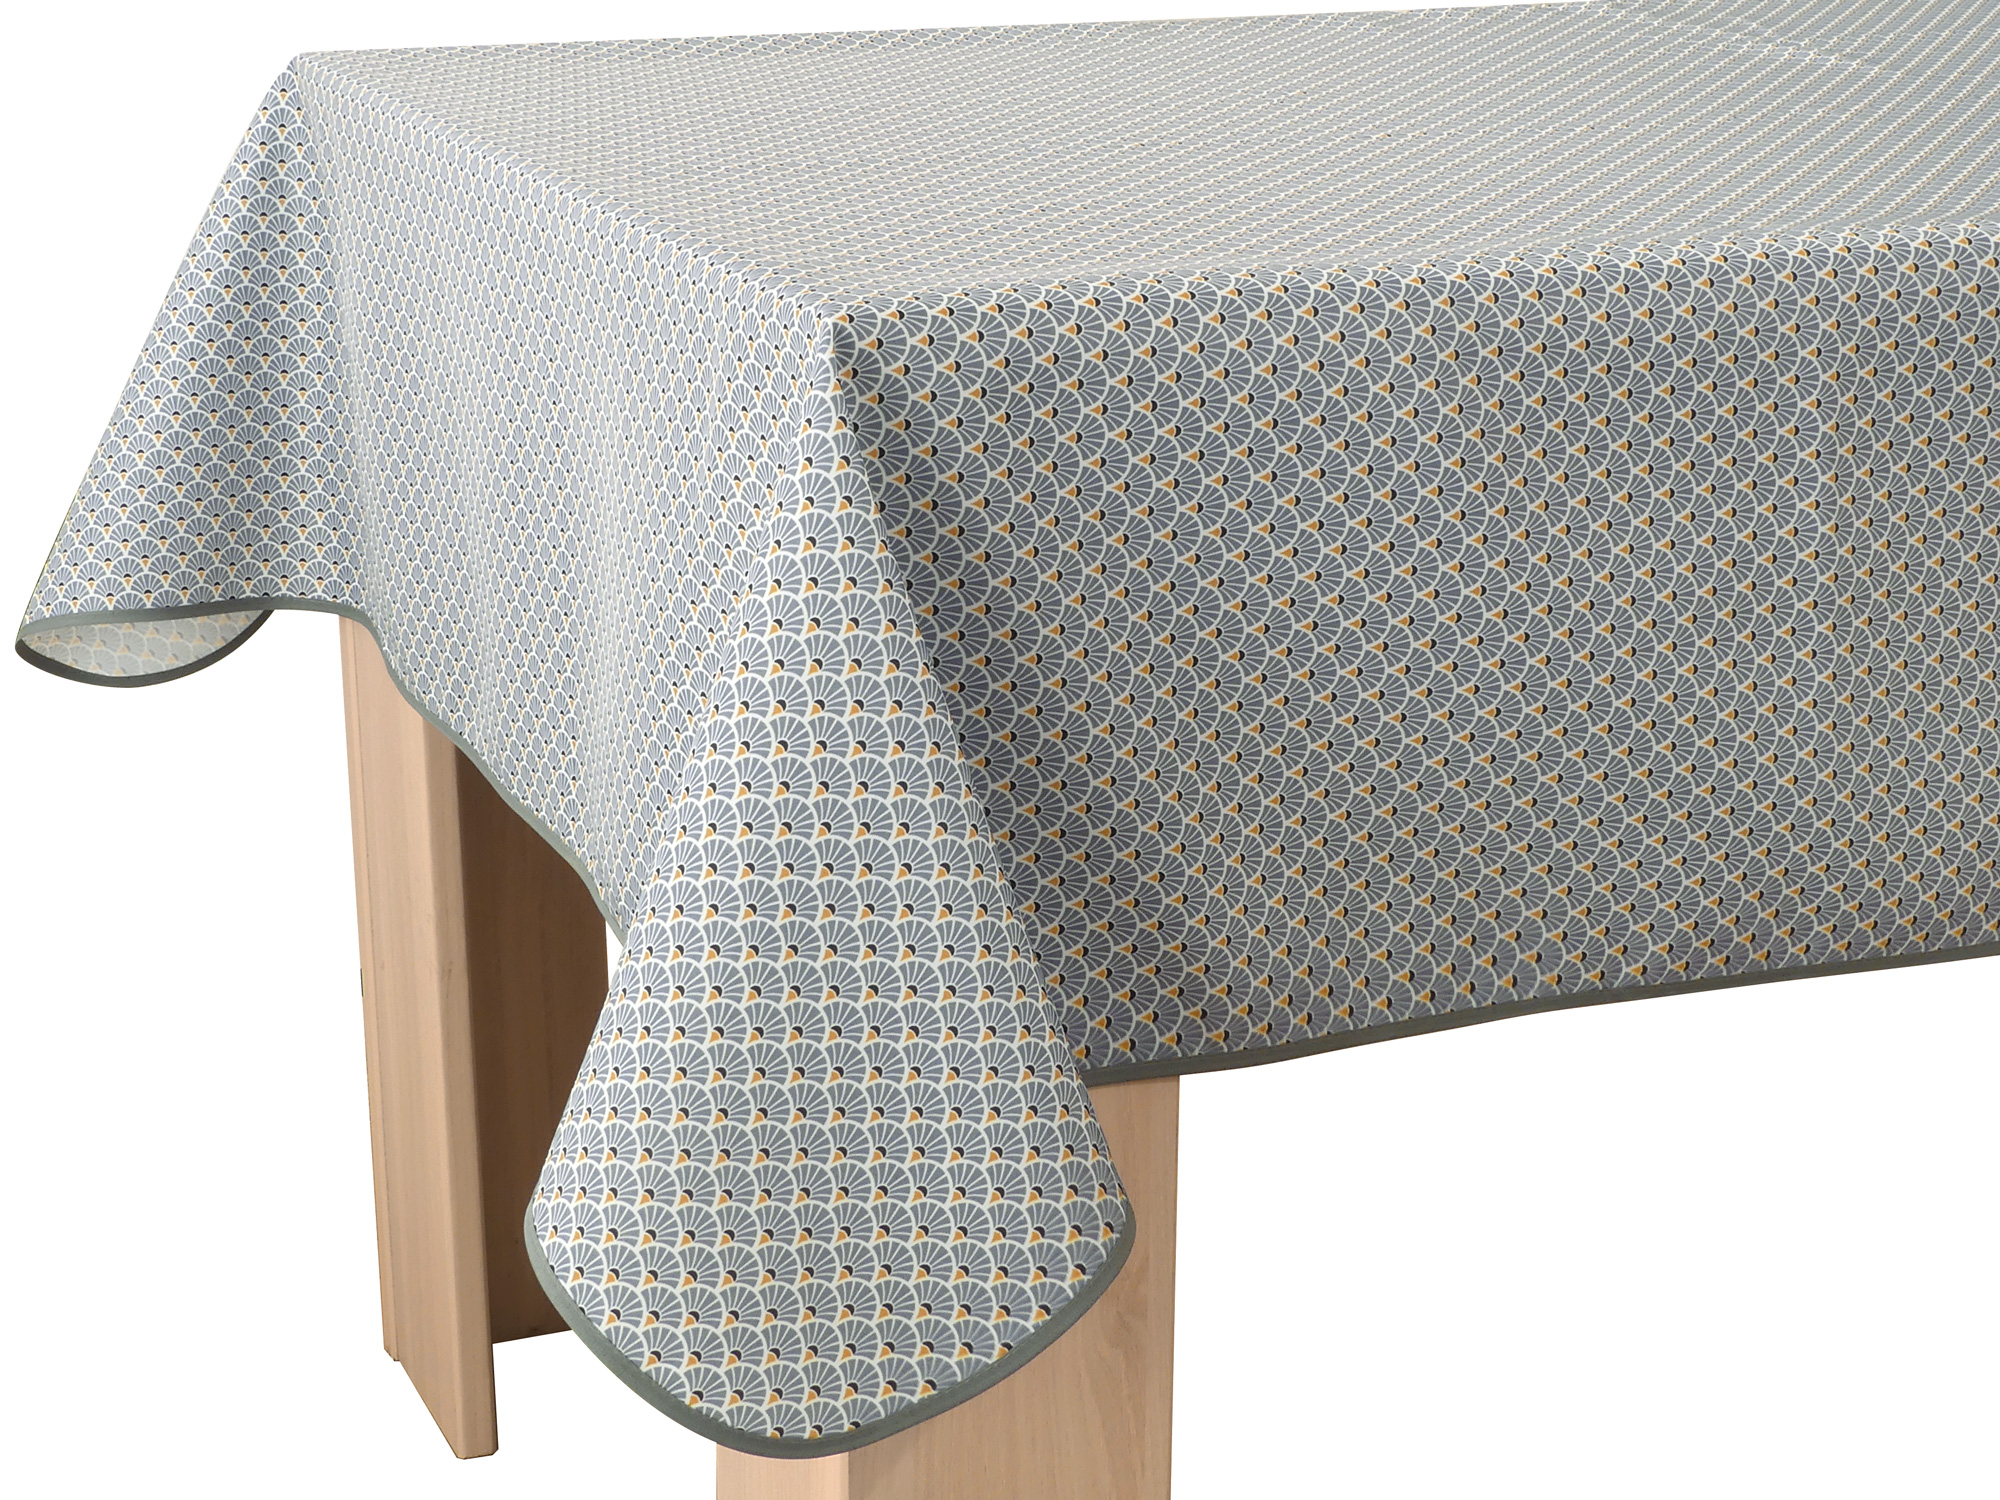 Nappe Artchic, paon stylisé, blanc, bleu, gris, doré ou vert, carrée 150x150  cm, 100% polyester anti-taches